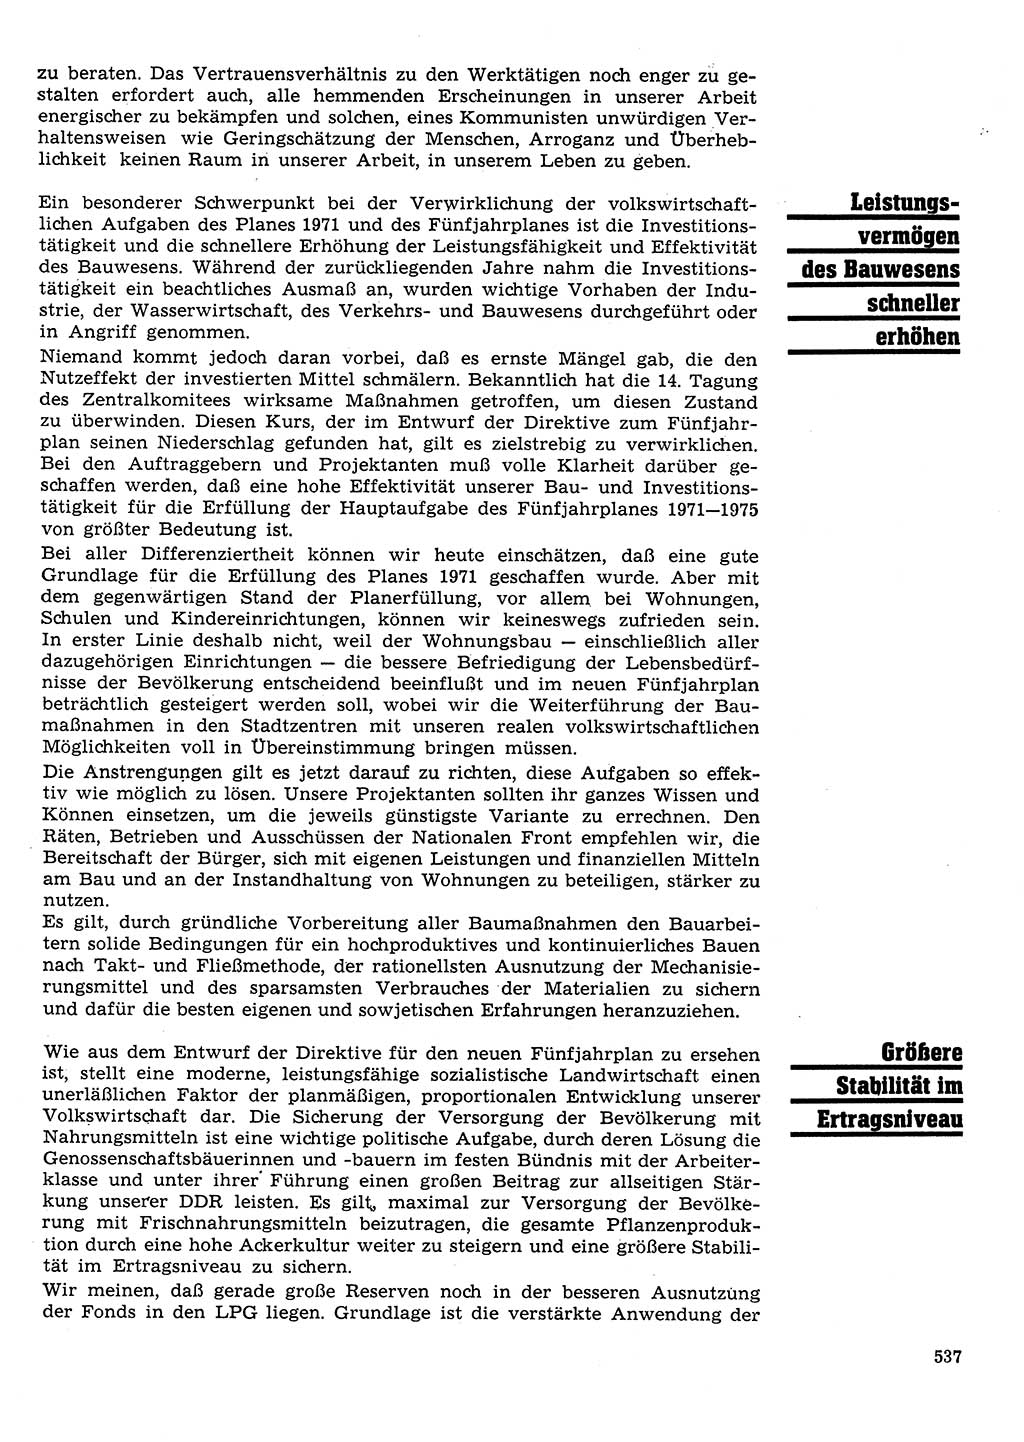 Neuer Weg (NW), Organ des Zentralkomitees (ZK) der SED (Sozialistische Einheitspartei Deutschlands) für Fragen des Parteilebens, 26. Jahrgang [Deutsche Demokratische Republik (DDR)] 1971, Seite 537 (NW ZK SED DDR 1971, S. 537)